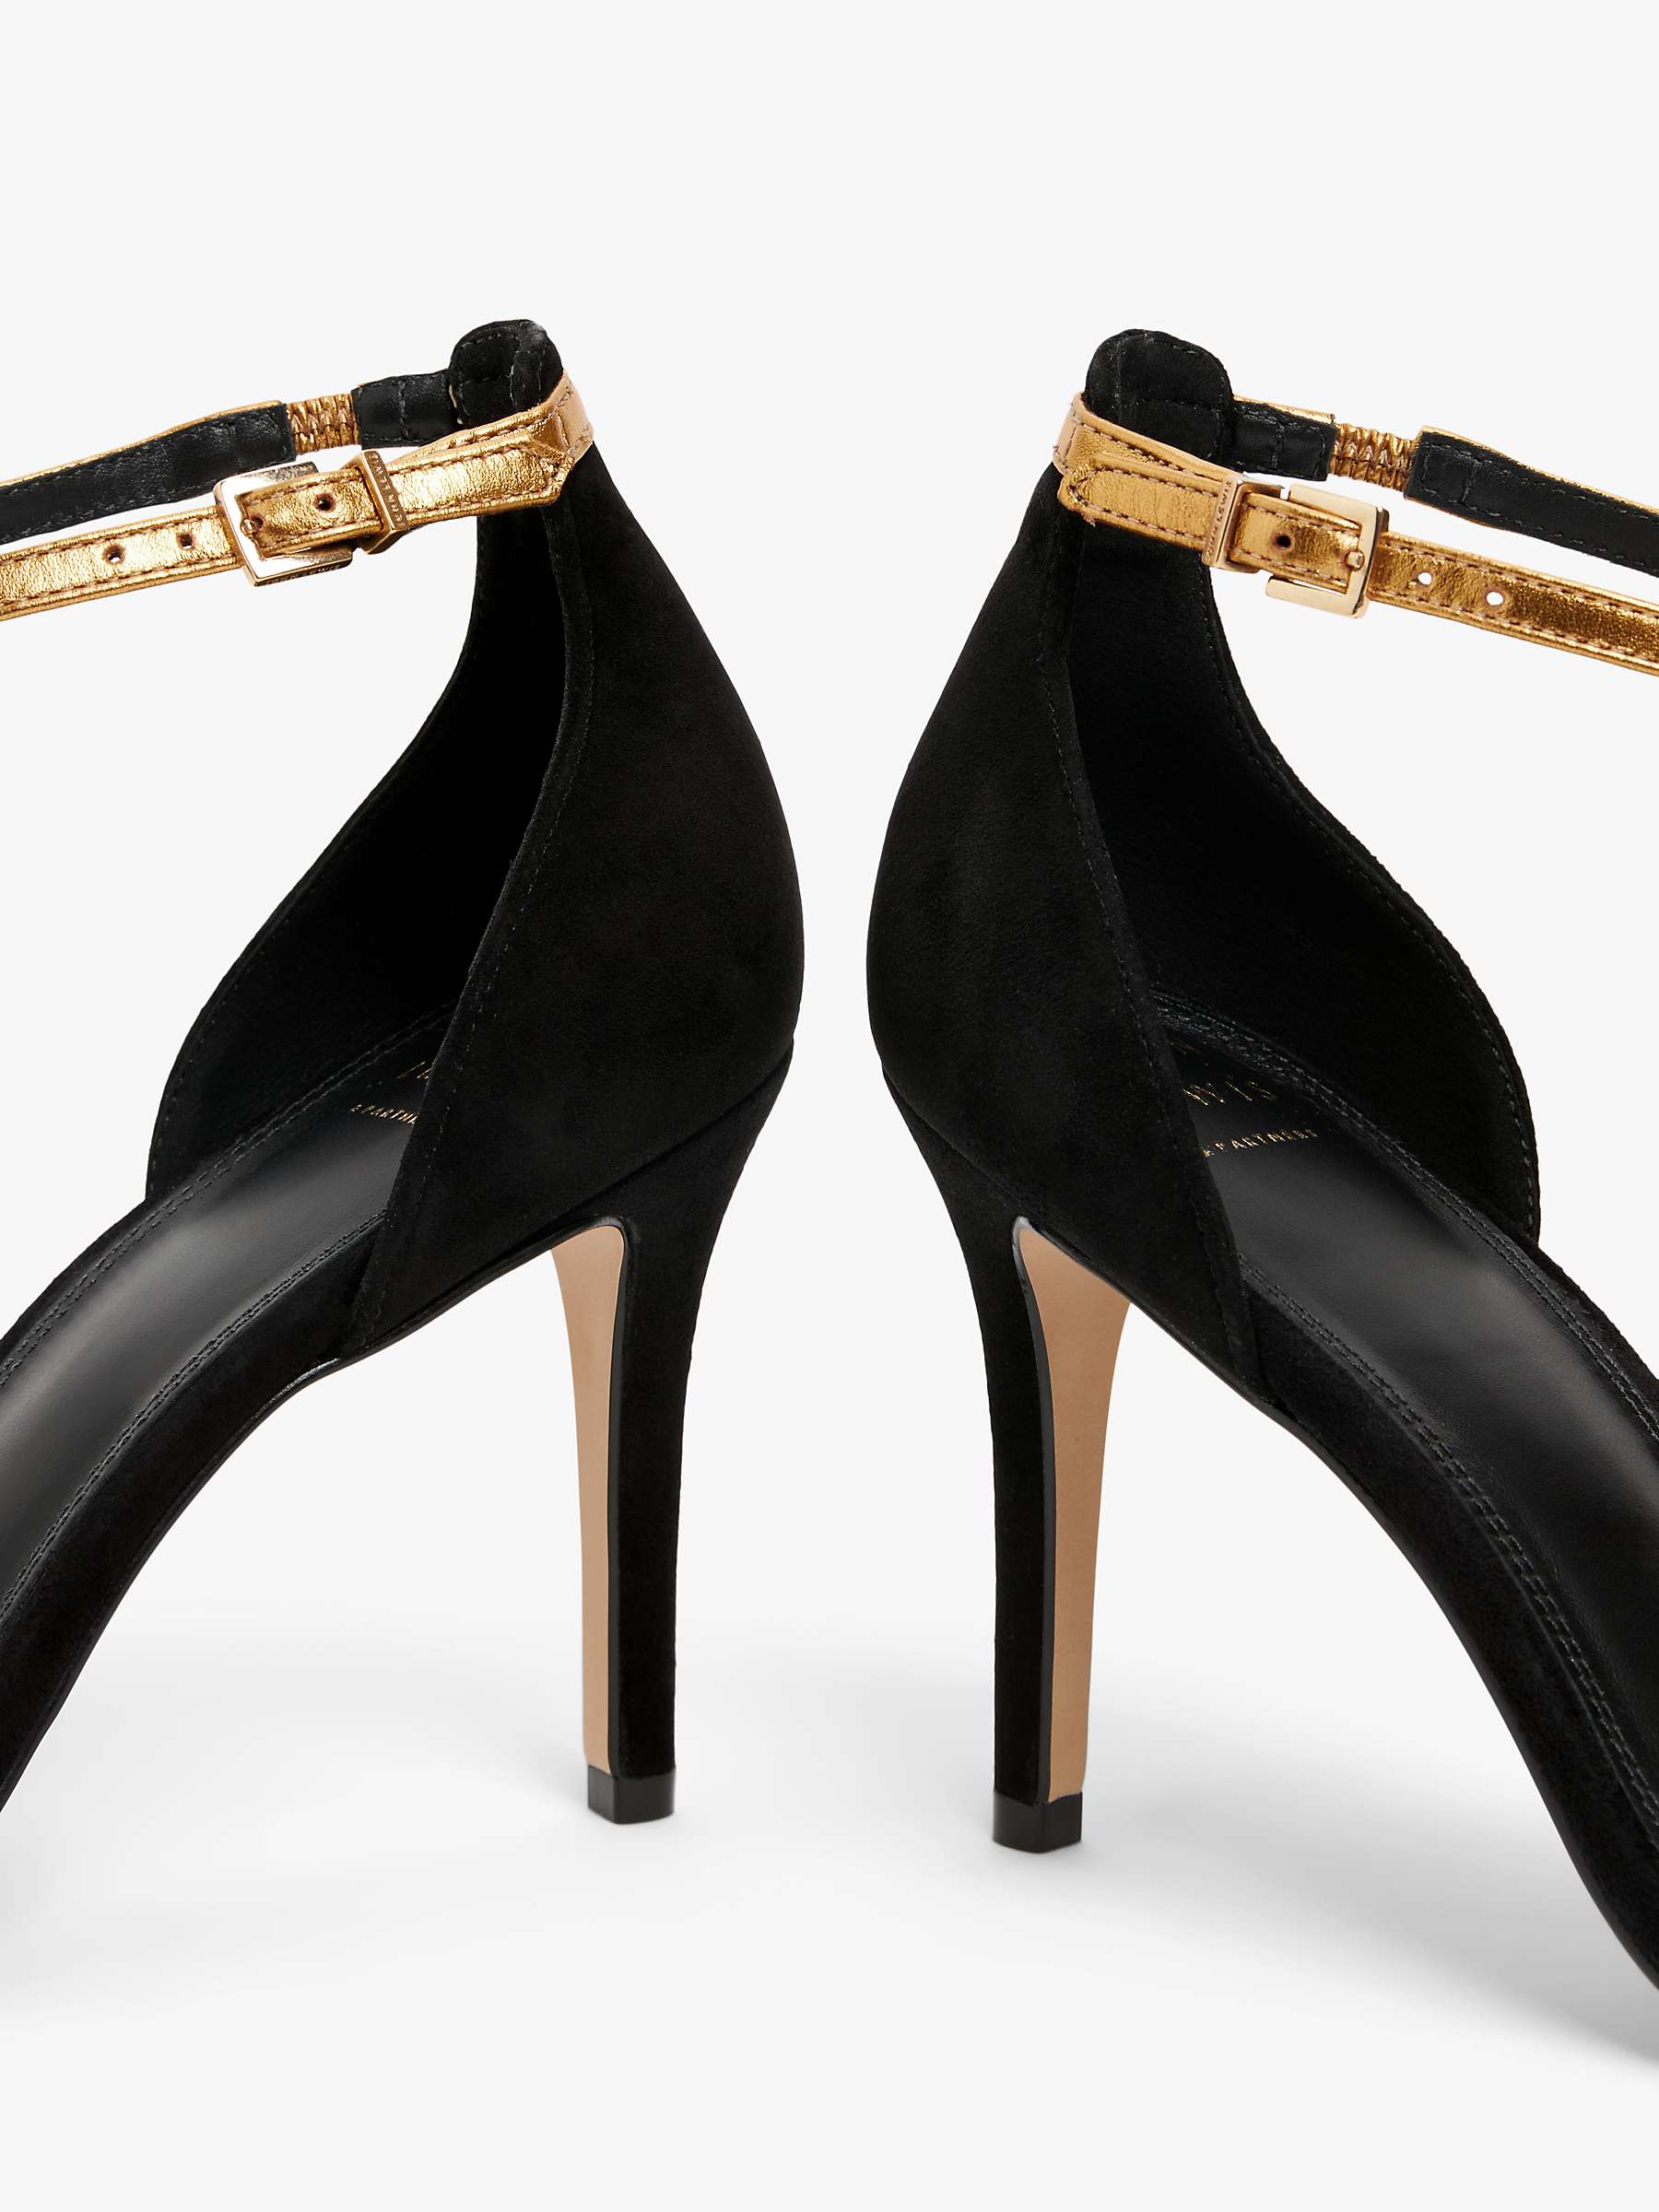 Buy John Lewis Maryland Suede High Heel Dressy T-Bar Sandals, Black/Gold Online at johnlewis.com